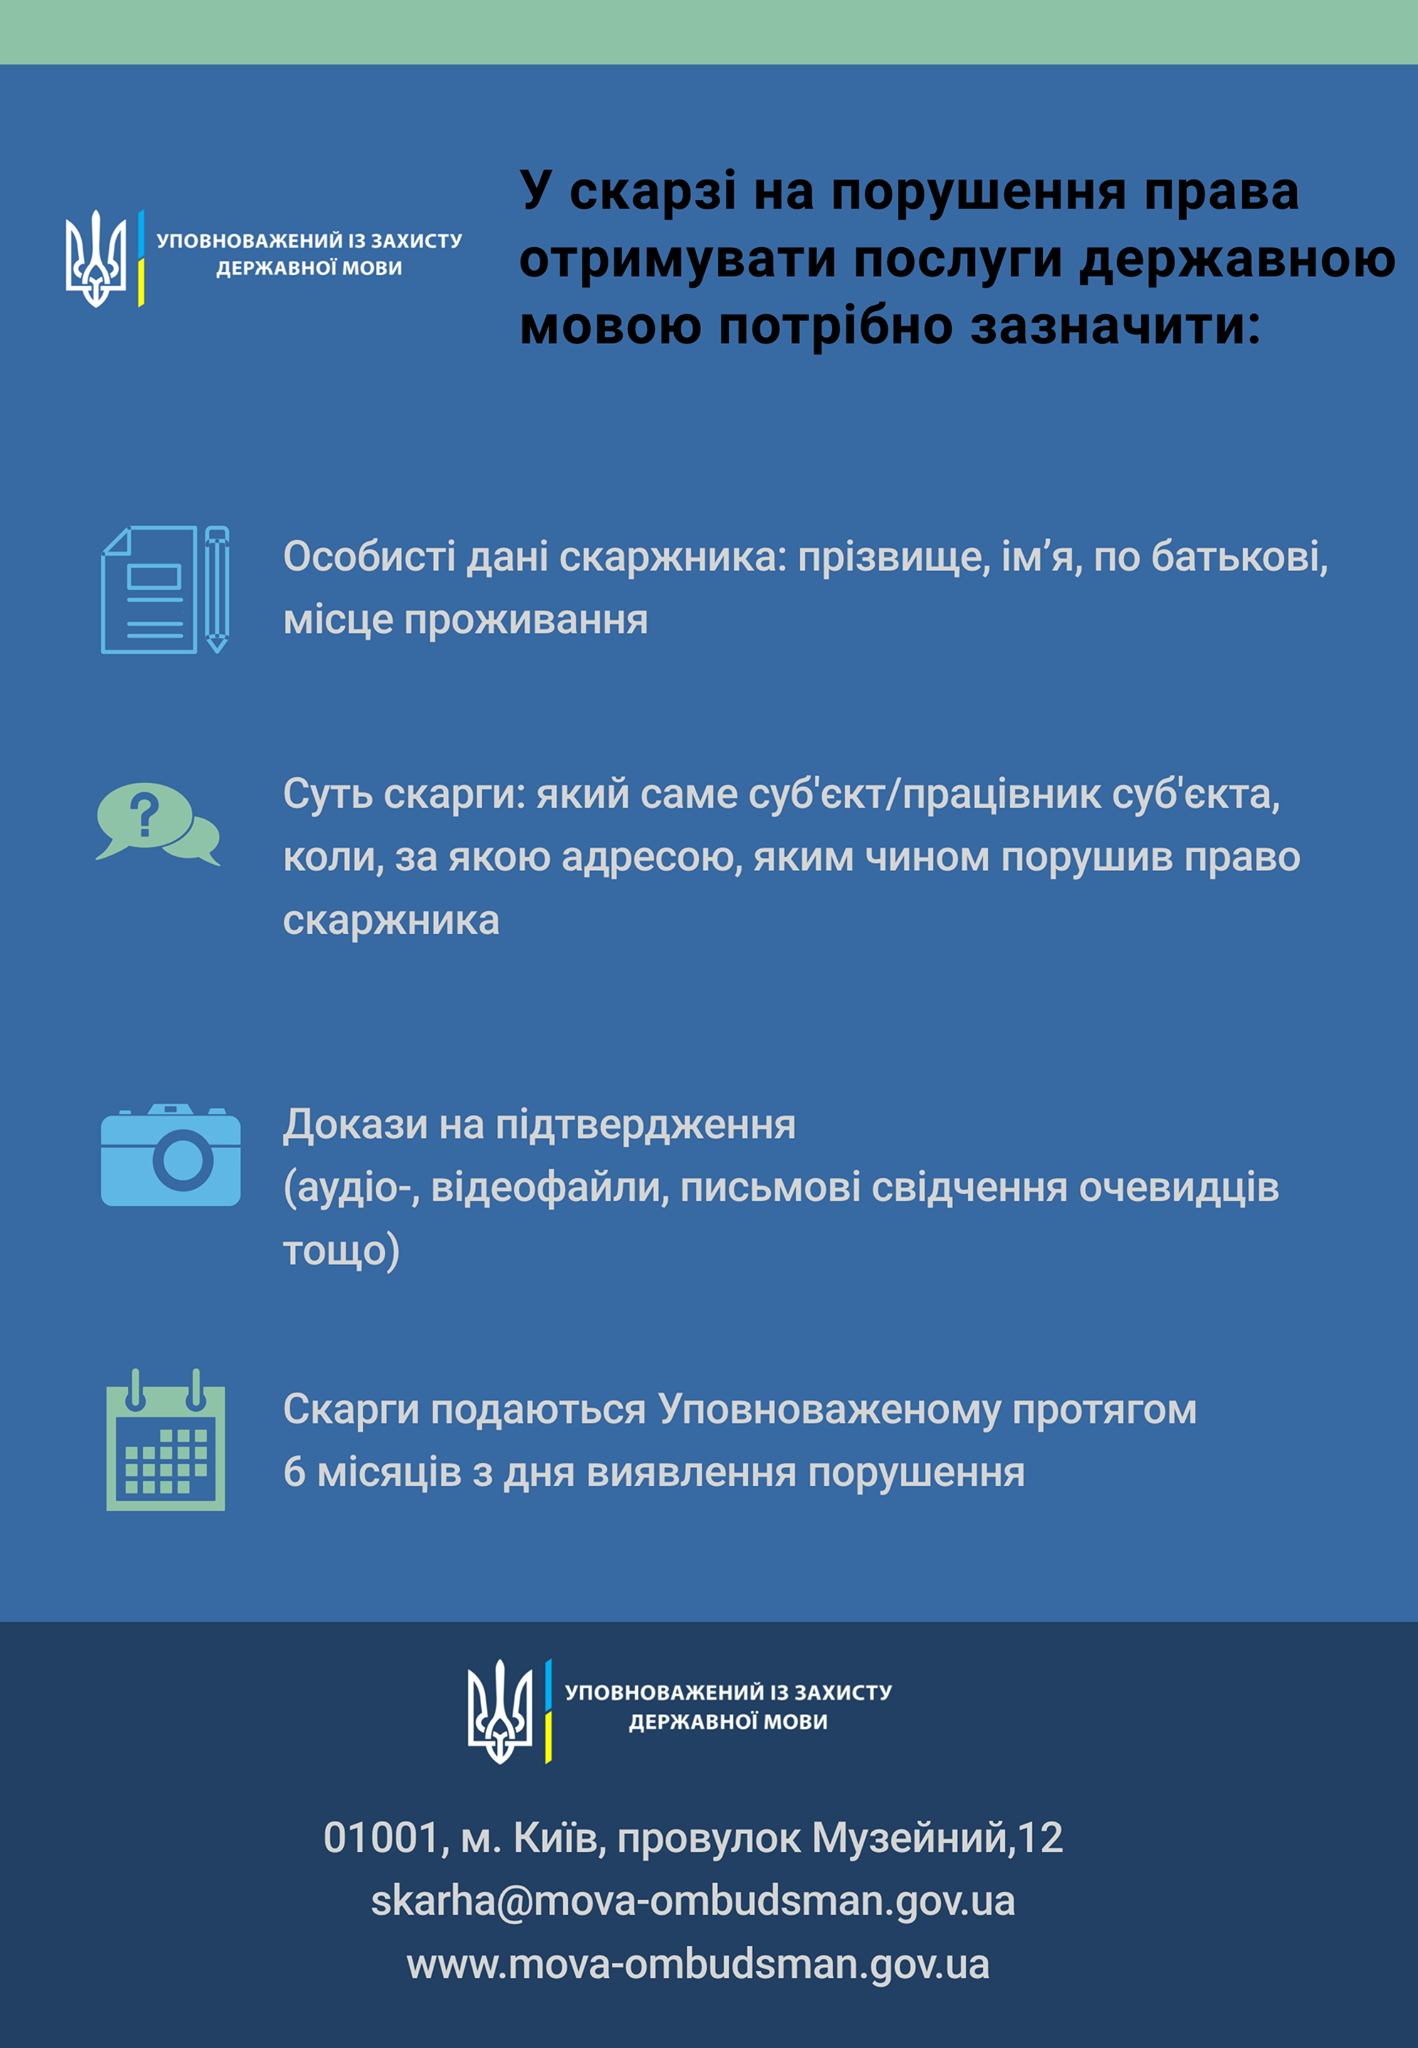 как действовать в случае отказа в обслуживании на украинском языке